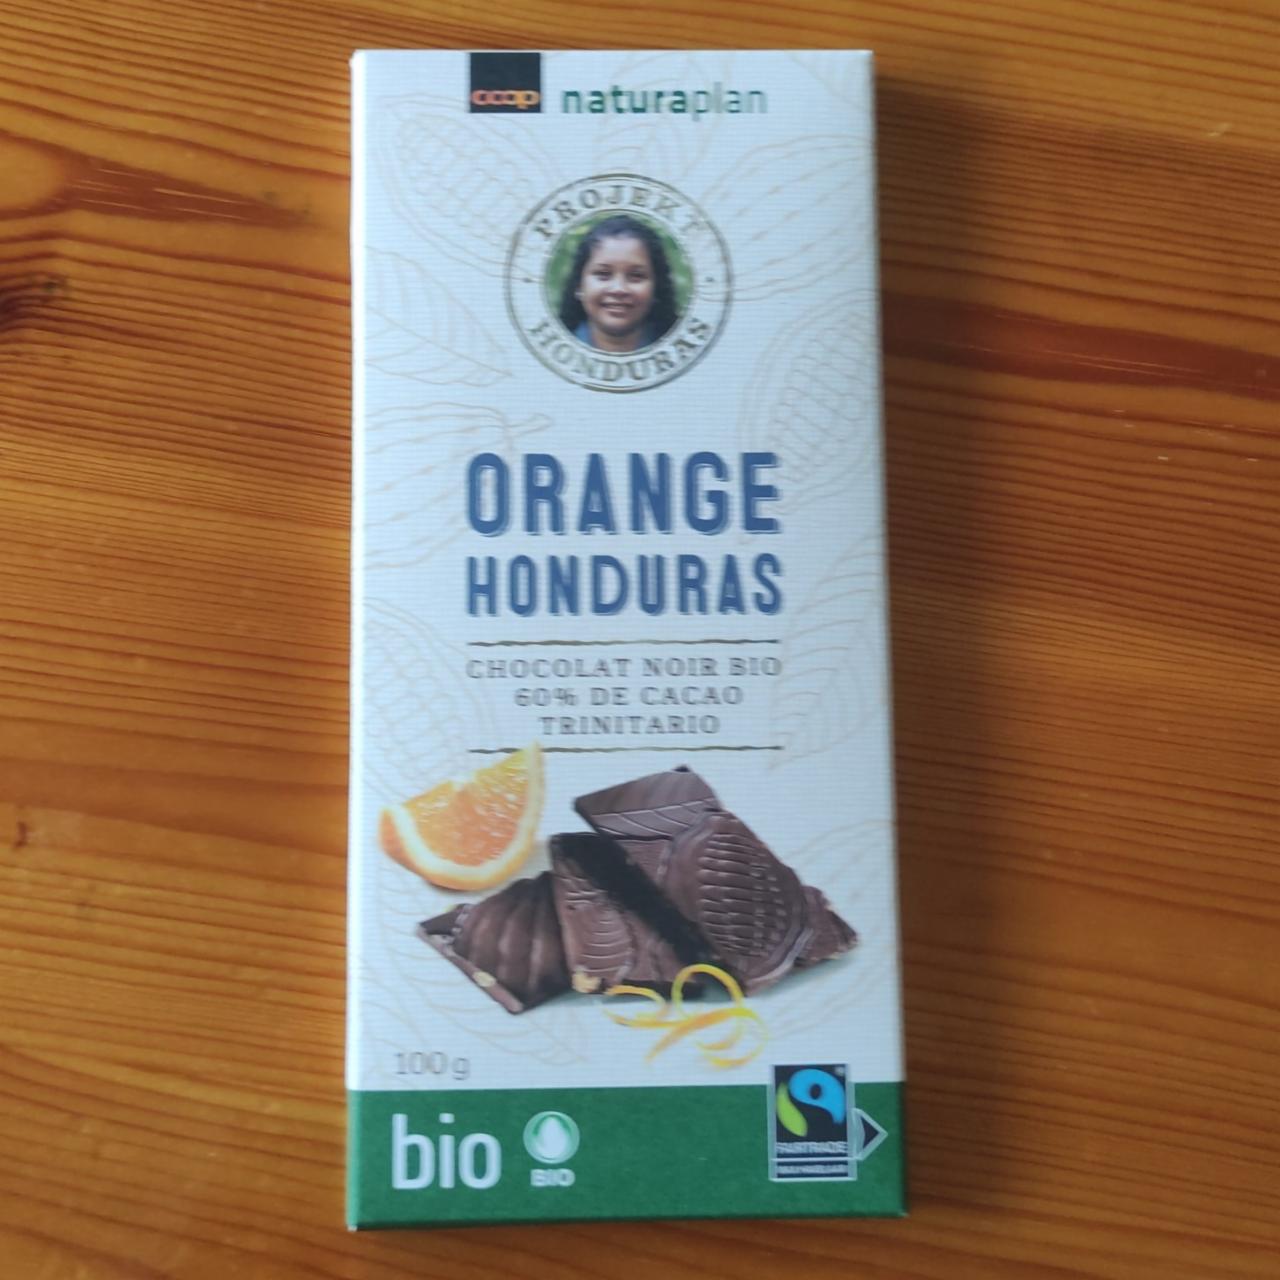 Фото - Темный шоколад 60% какао гондурасский апельсин Orange Honduras Coop